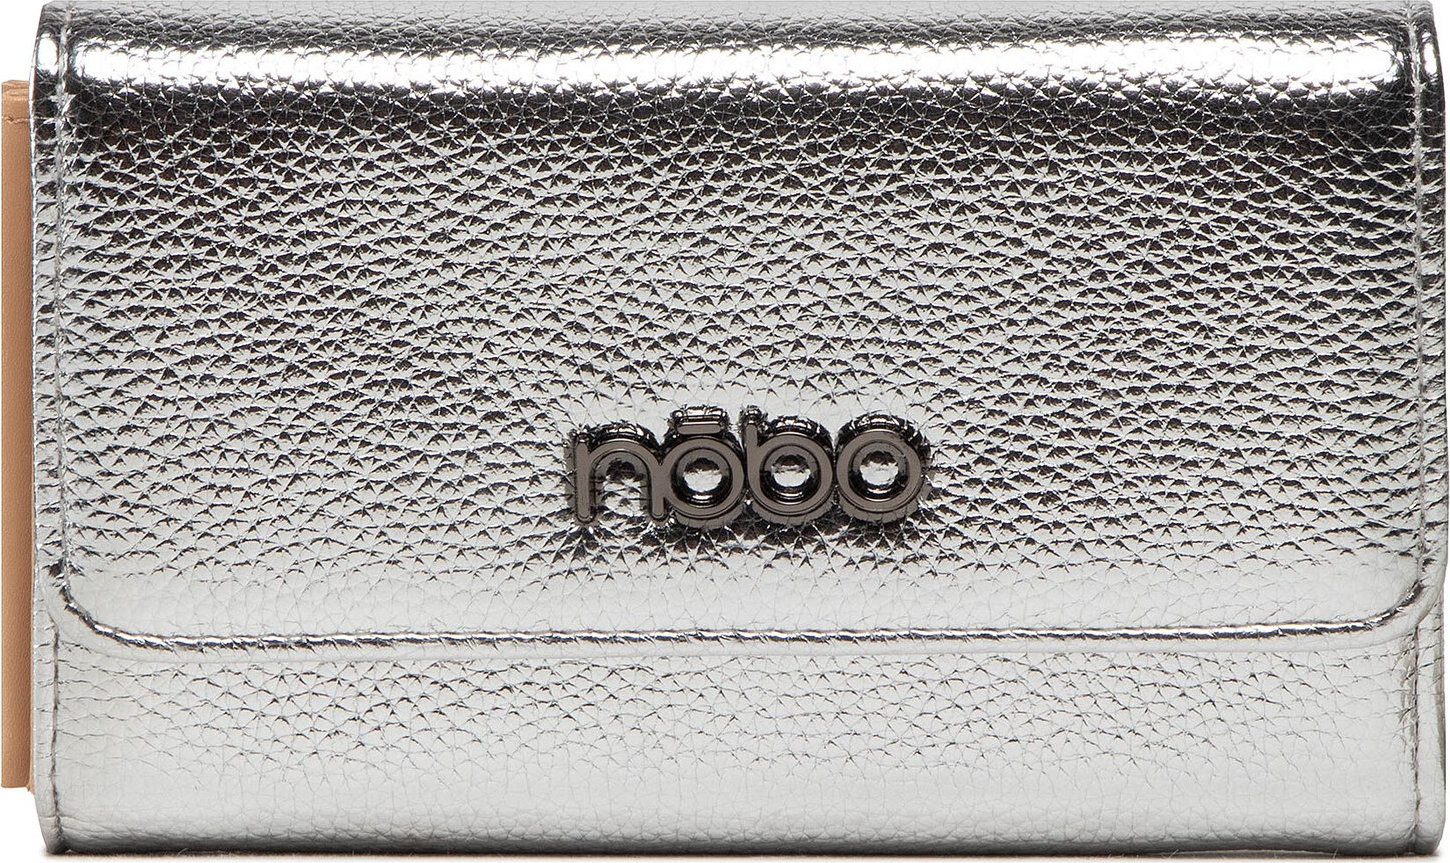 Velká dámská peněženka Nobo NPUR-M0042-C022 Stříbrná